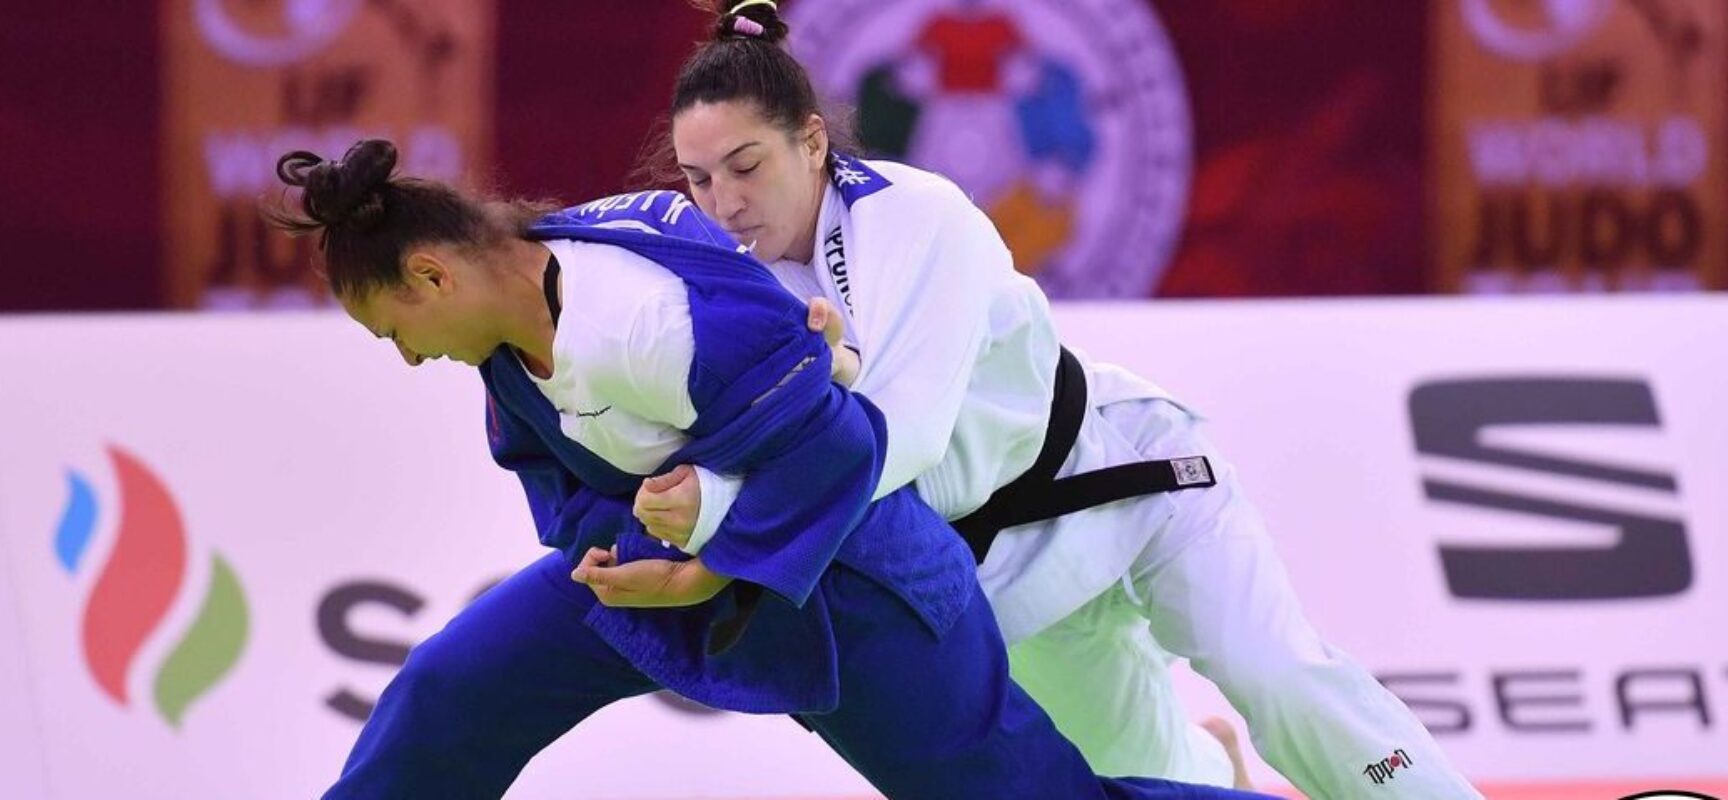 Ippon relâmpago dá bronze a Mayra Aguiar no Grand Slam de Budapeste